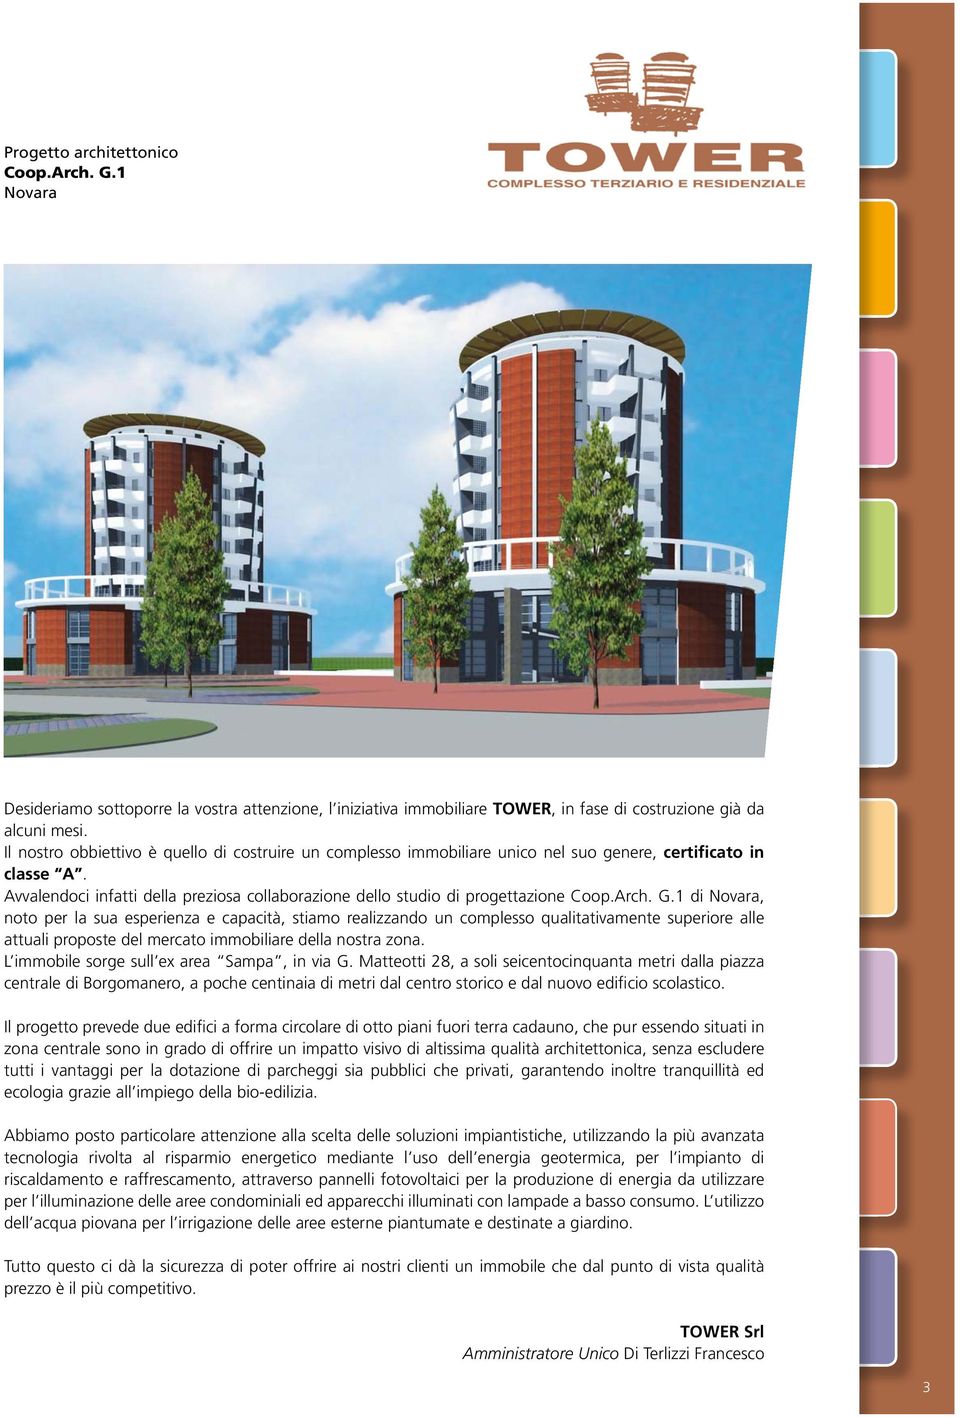 Arch. G.1 di Novara, noto per la sua esperienza e capacità, stiamo realizzando un complesso qualitativamente superiore alle attuali proposte del mercato immobiliare della nostra zona.